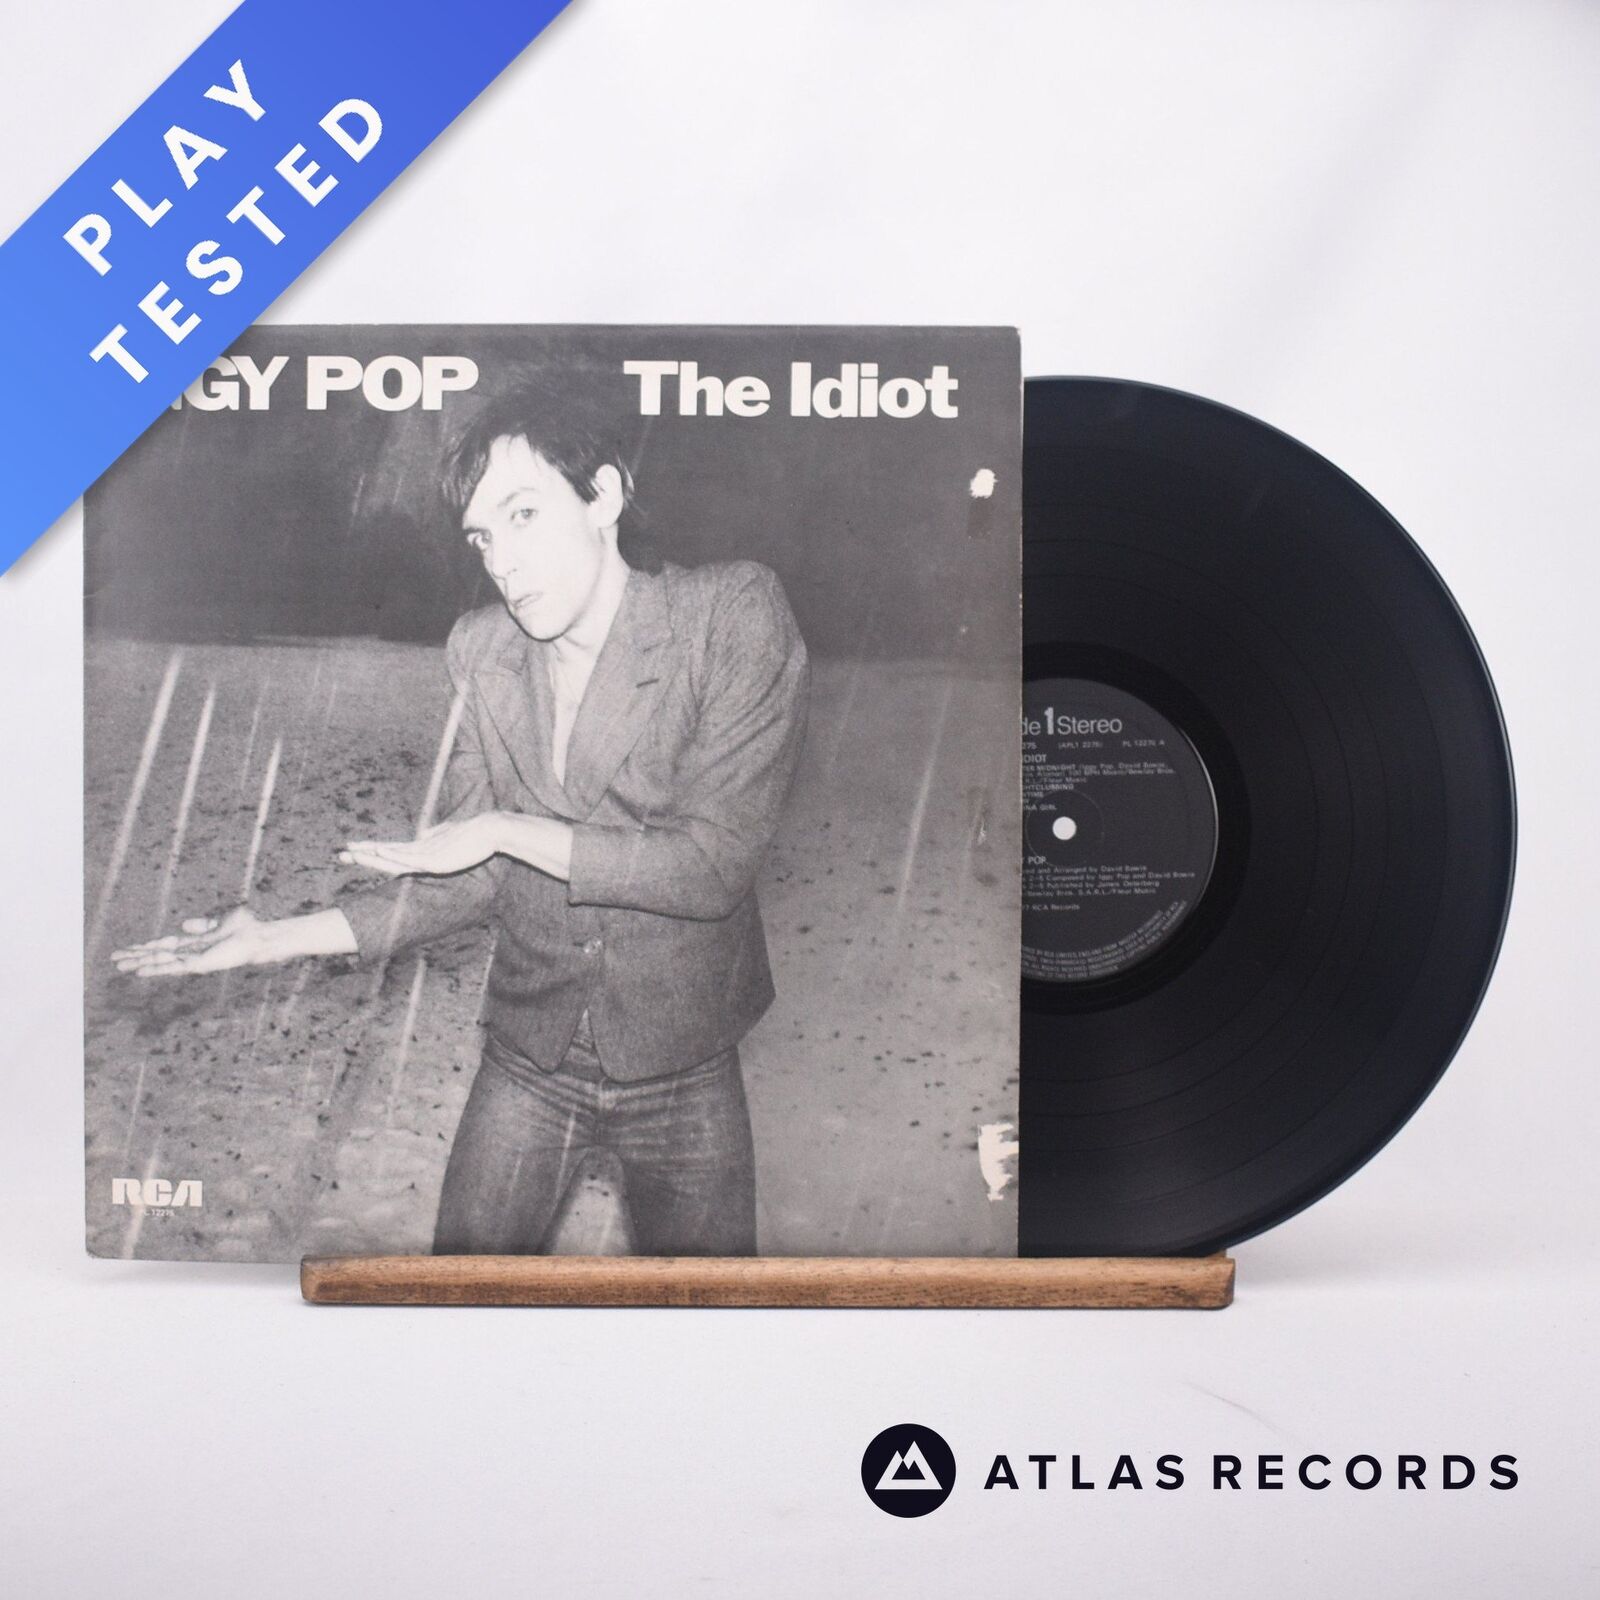 Iggy Pop - The Idiot - Black Labels 1-A 1-B LP Vinyl Record - EX/EX